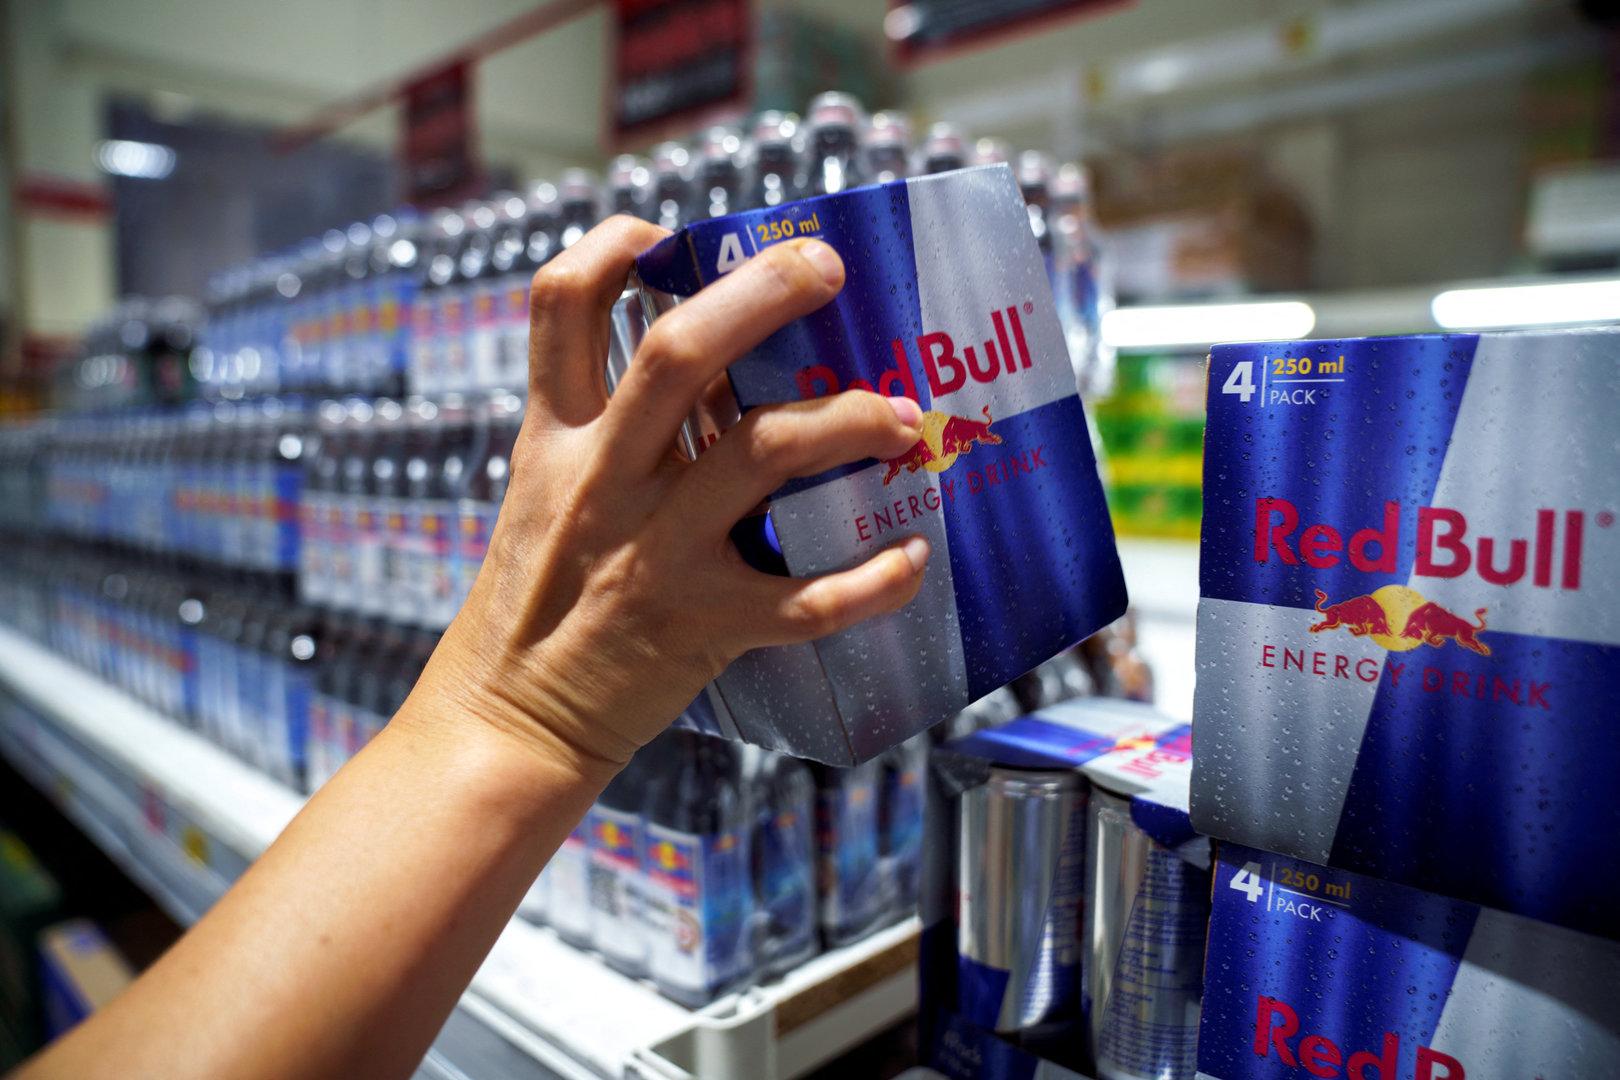 Schon 11 Milliarden Dosen, aber Gewinn stagniert: Red Bull in Zahlen